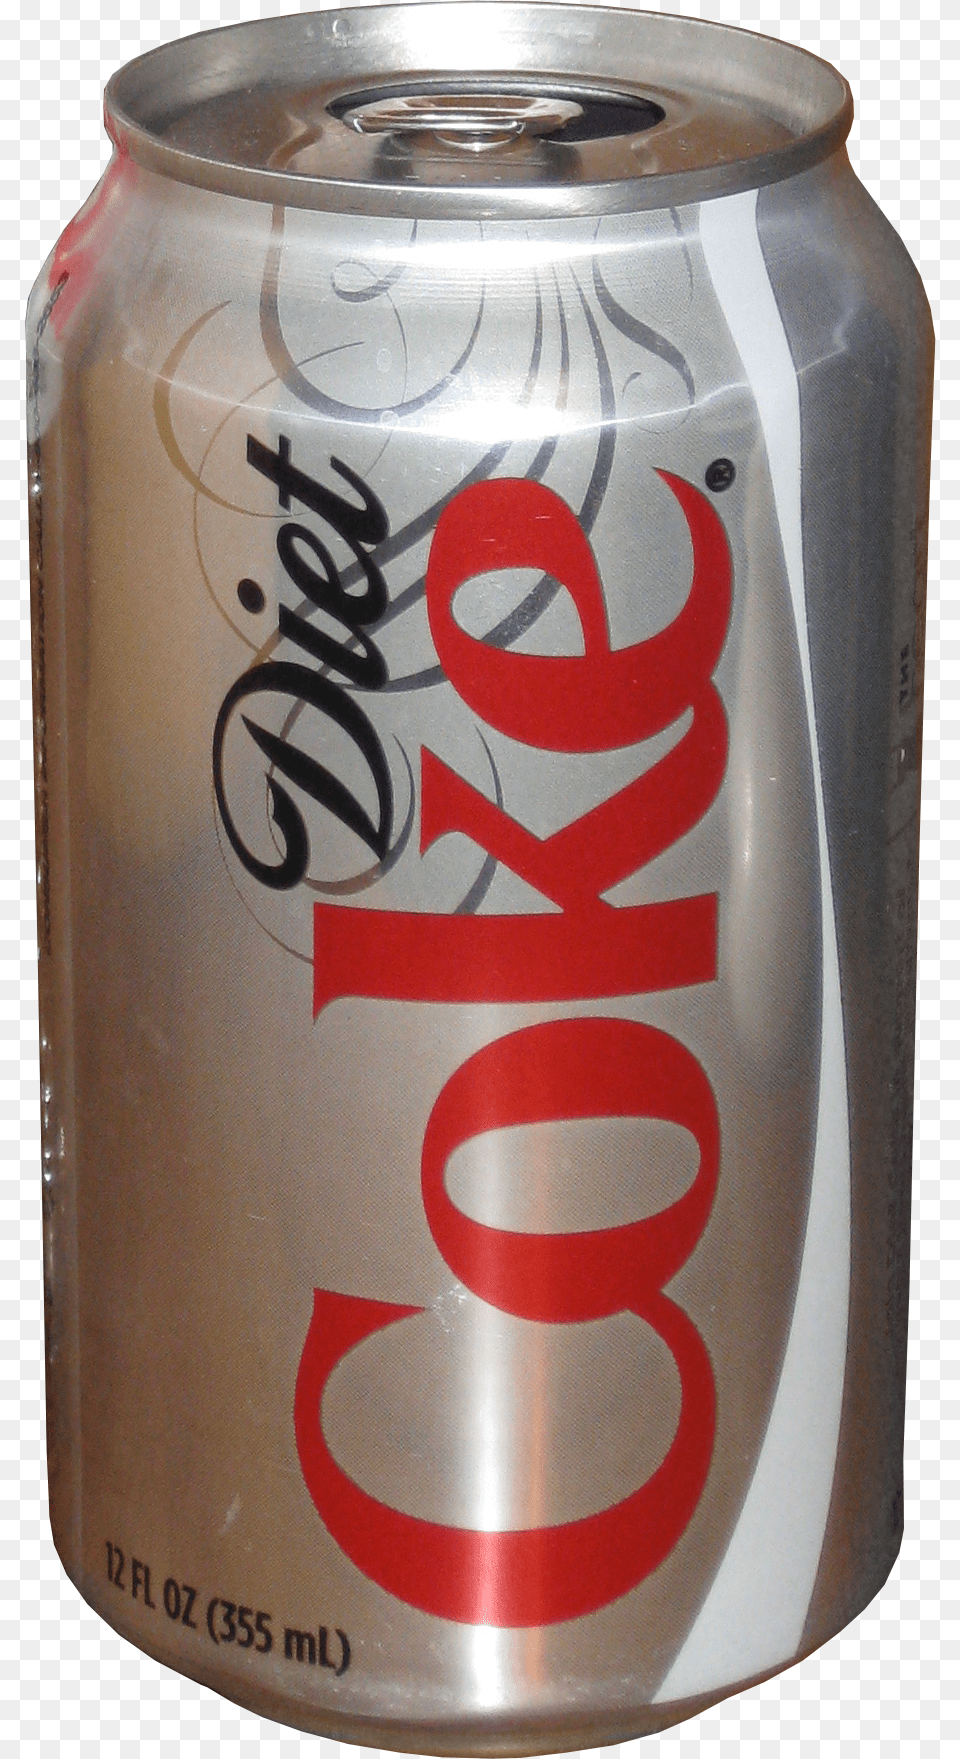 Diet Coke Diet Coke Glass Bottles 46 Packs, Can, Tin, Beverage, Soda Png Image